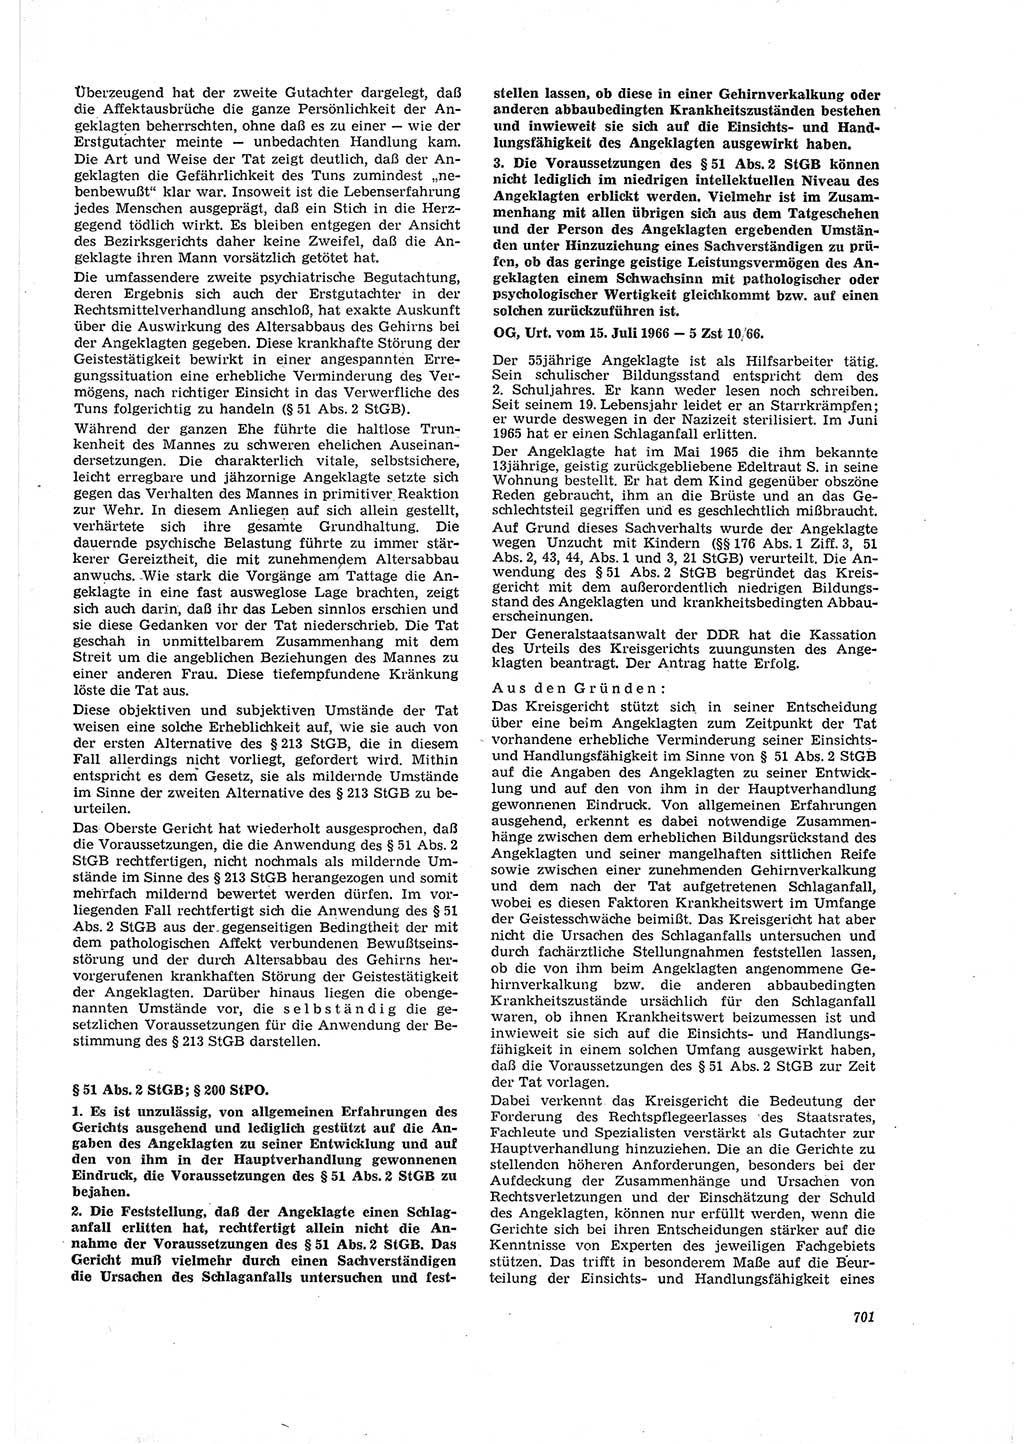 Neue Justiz (NJ), Zeitschrift für Recht und Rechtswissenschaft [Deutsche Demokratische Republik (DDR)], 20. Jahrgang 1966, Seite 701 (NJ DDR 1966, S. 701)